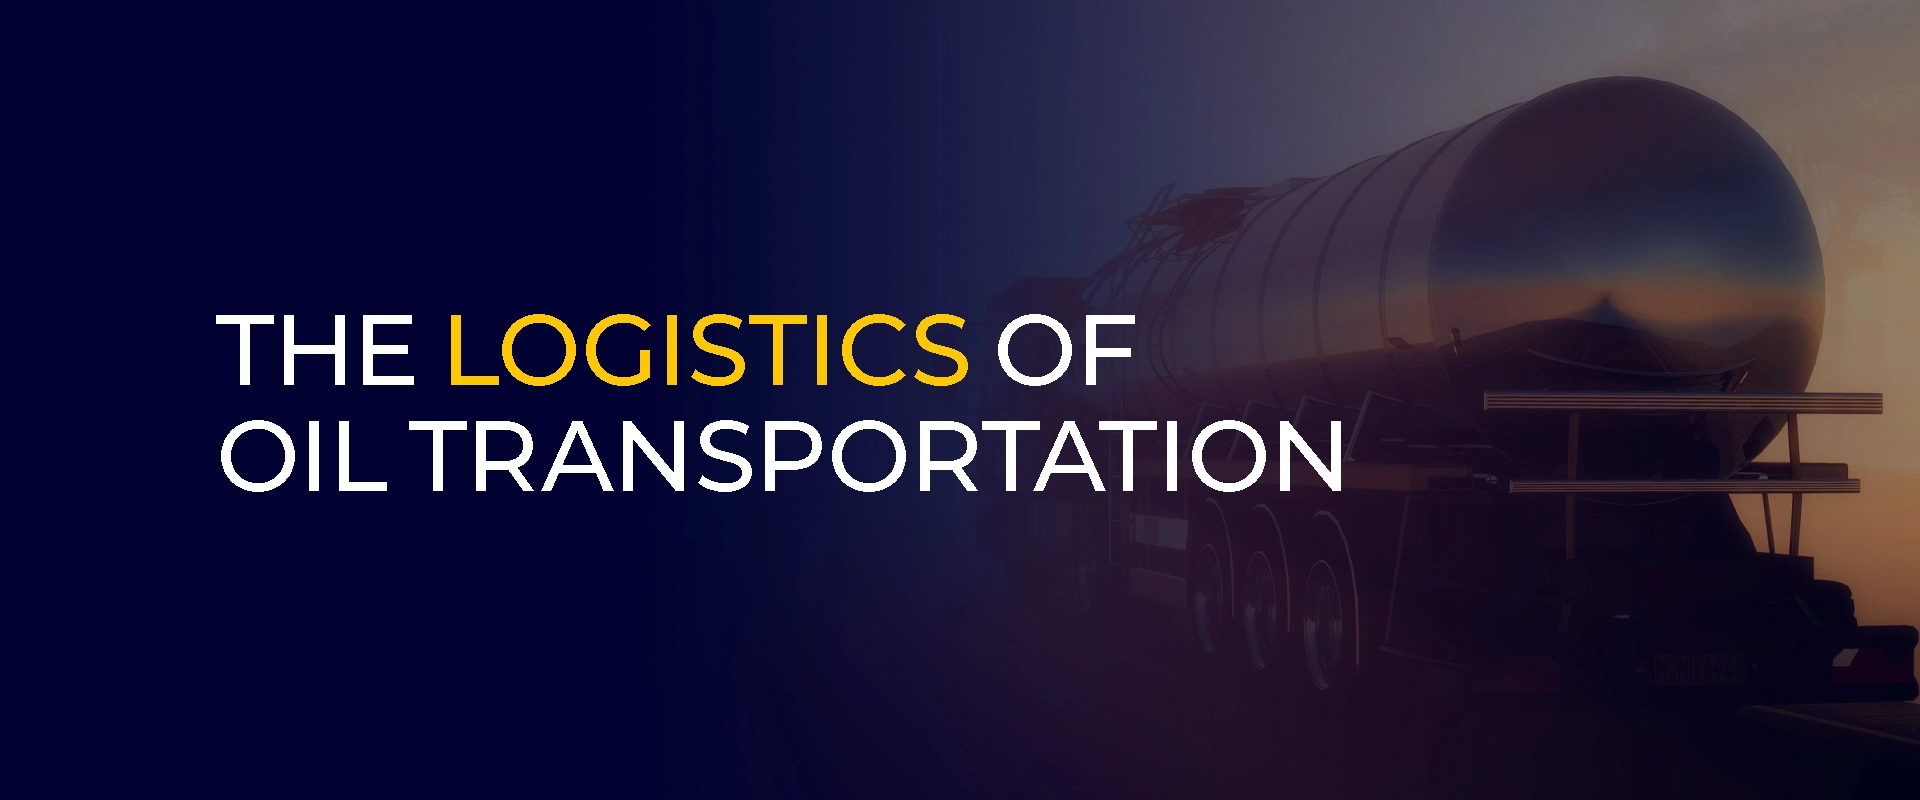 La logística del transporte de petróleo